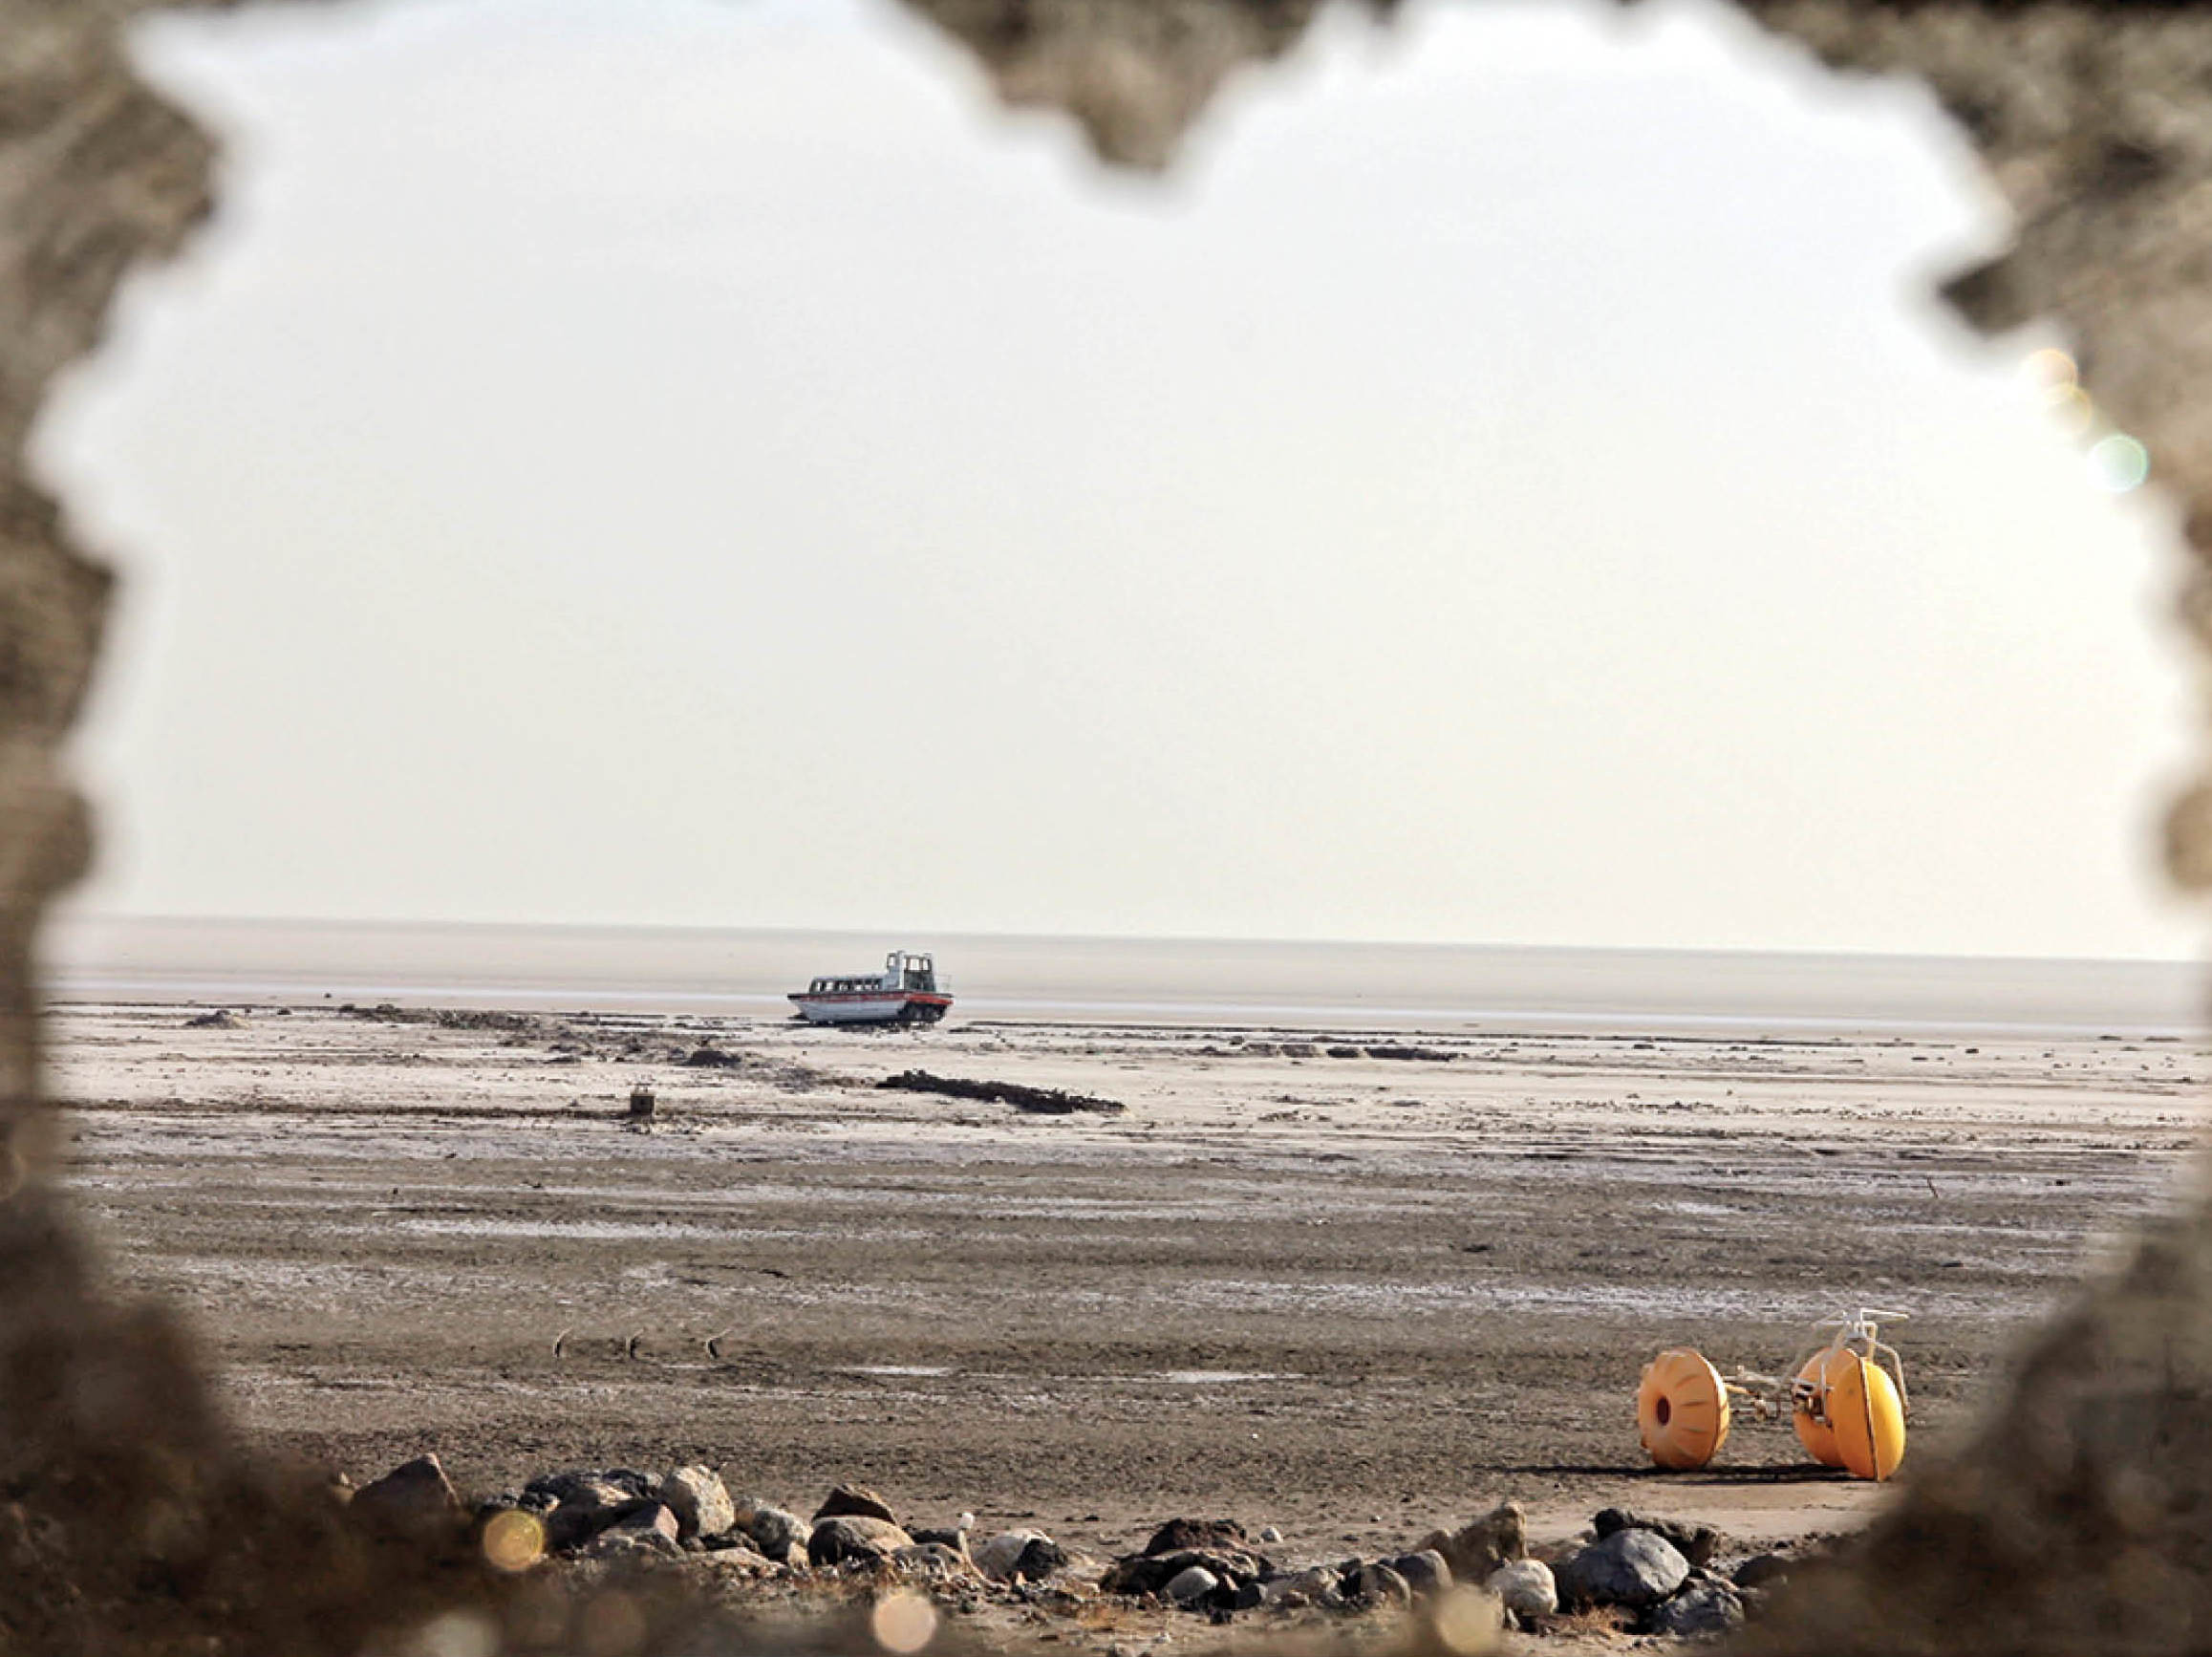  دریاچه ارومیه در بدترین وضعیت نیم قرن اخیر